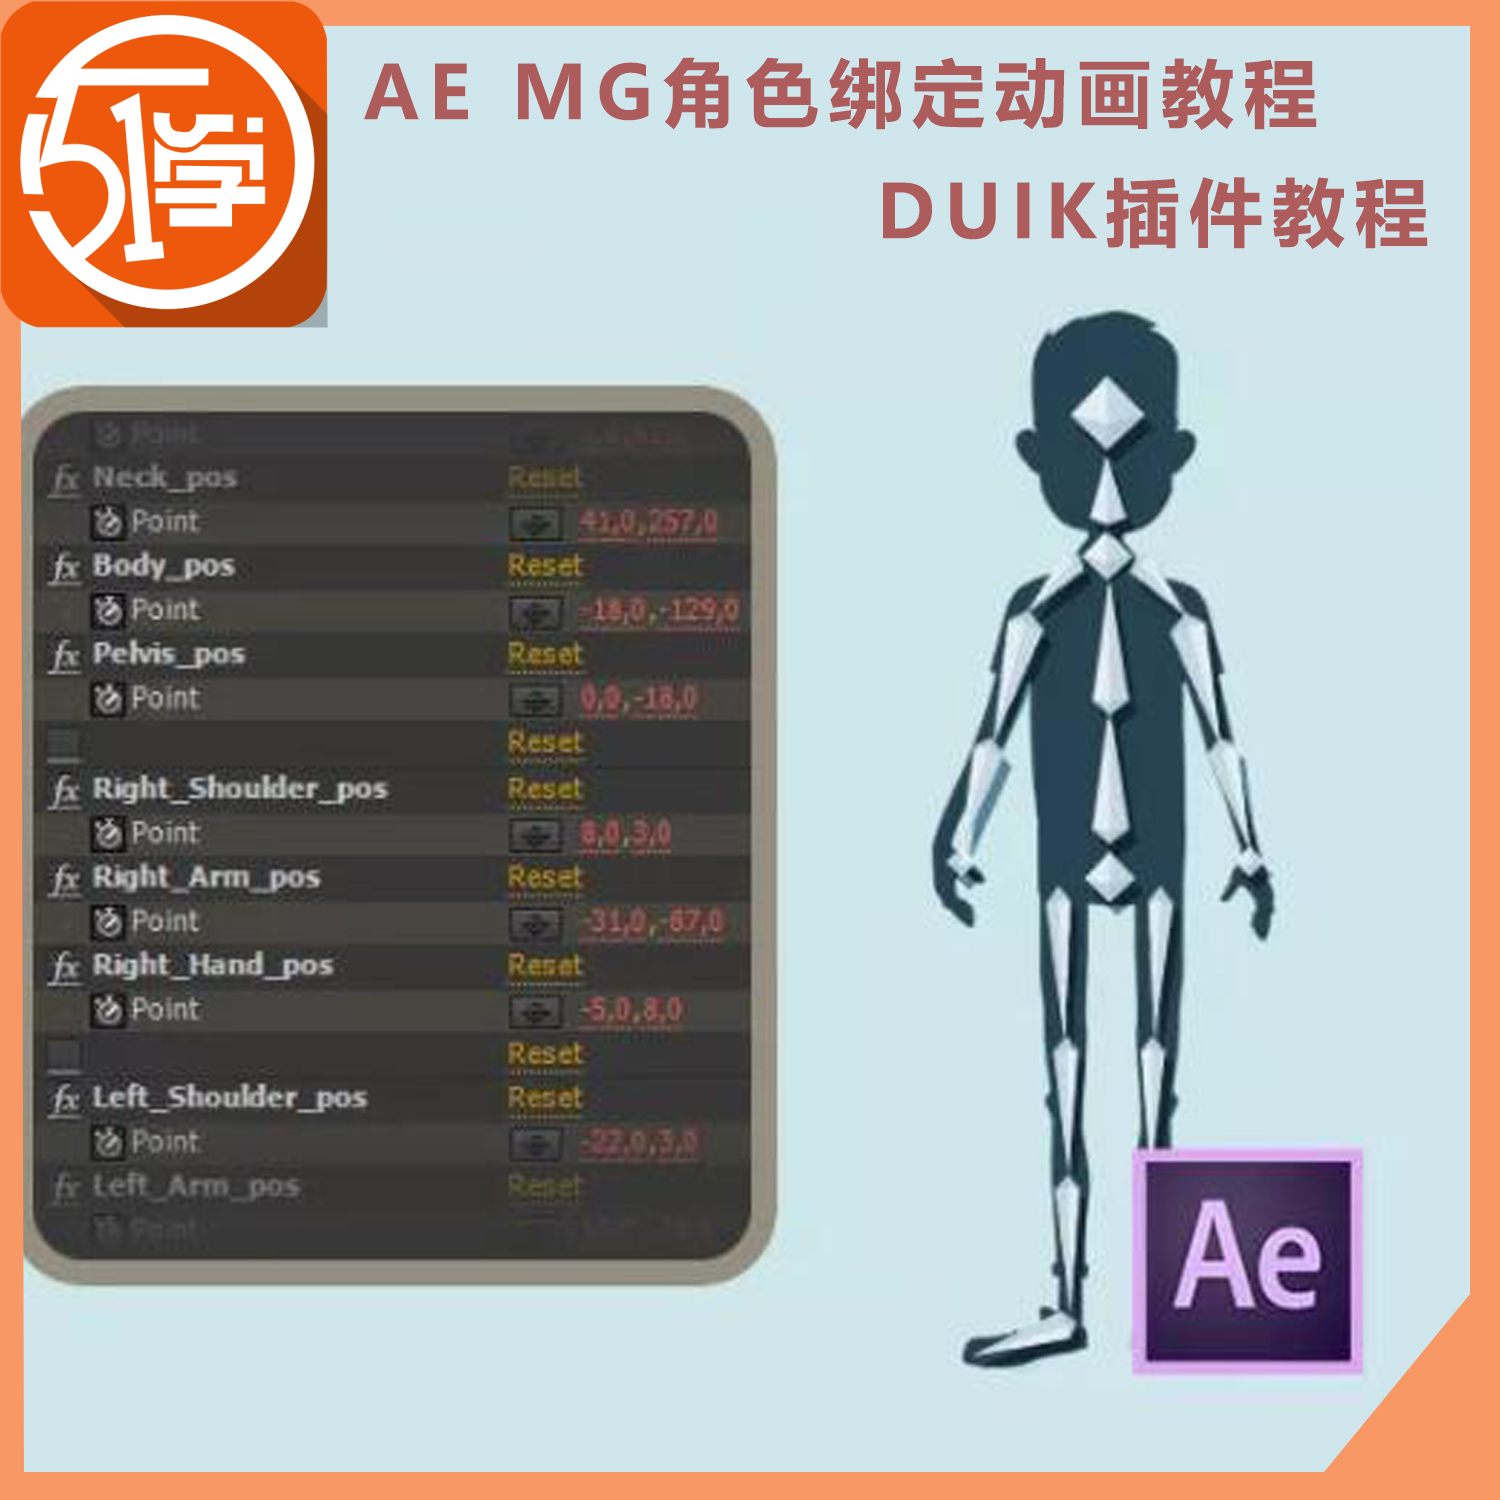 AE MG动画动画角色骨骼绑定 duik插件教程中文案例带学习素材